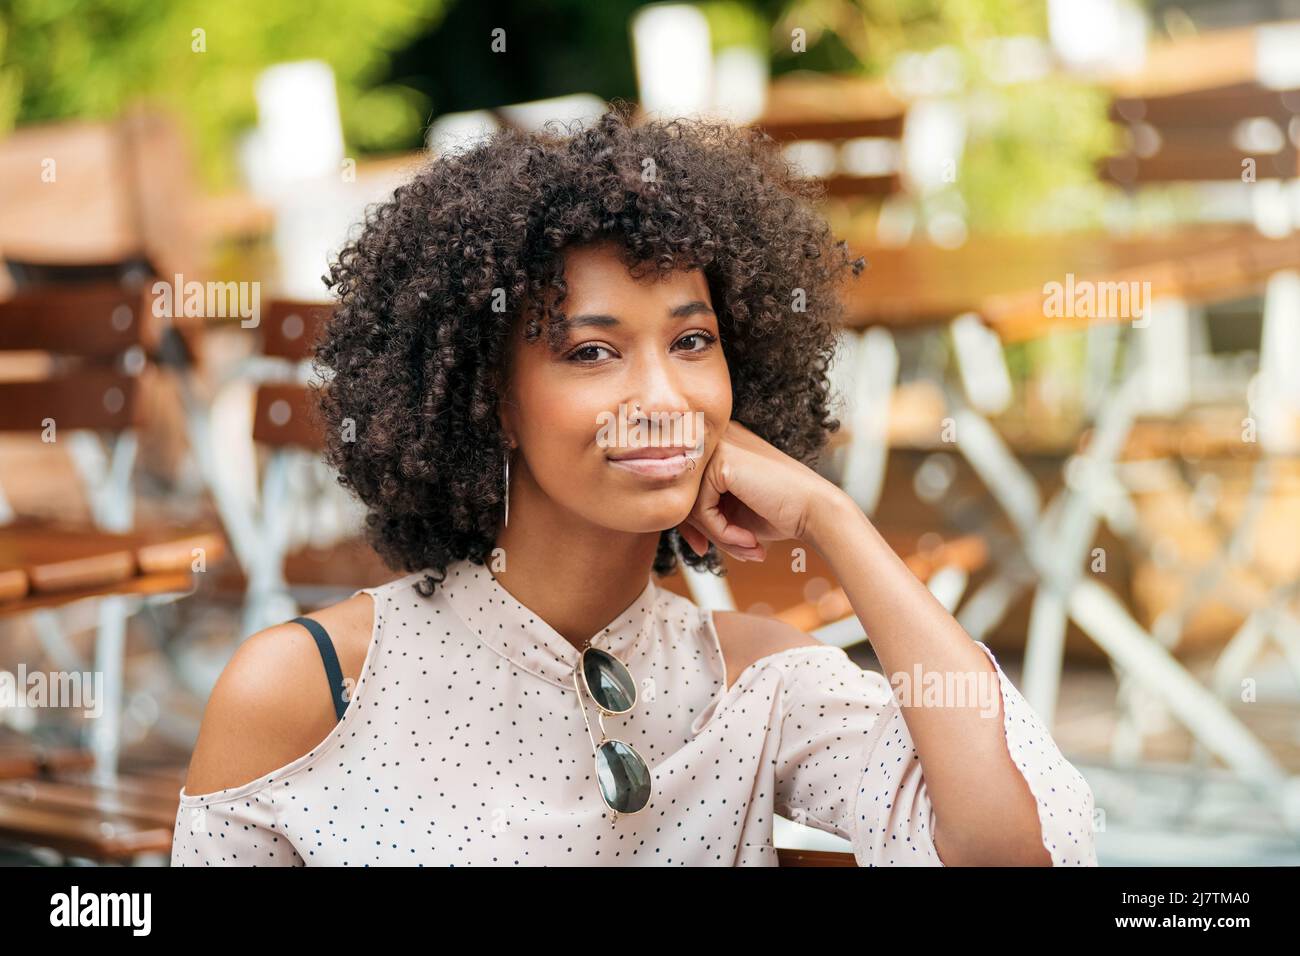 Attraktive afroamerikanische Frau mit lockigen Haaren, die auf die Kamera schaut, während sie auf der Terrasse des Cafés mit Tischen auf verschwommenem Hintergrund sitzt Stockfoto